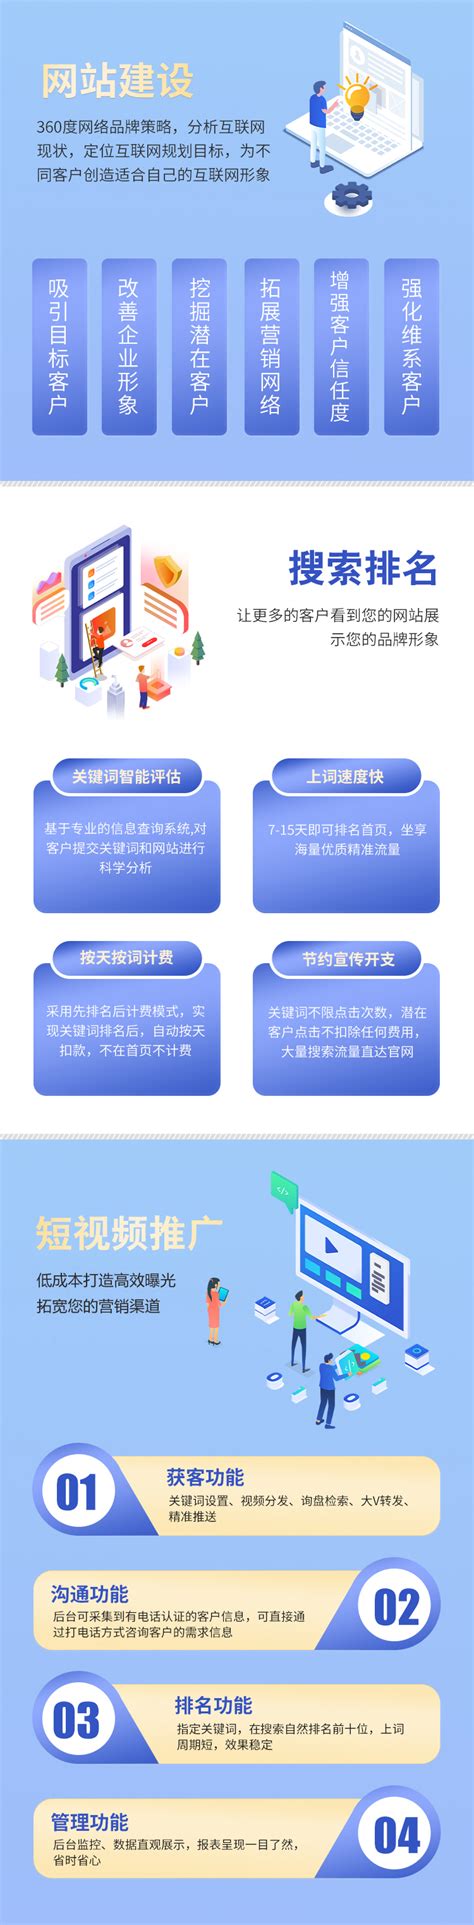 贵州网站建设规划的内容